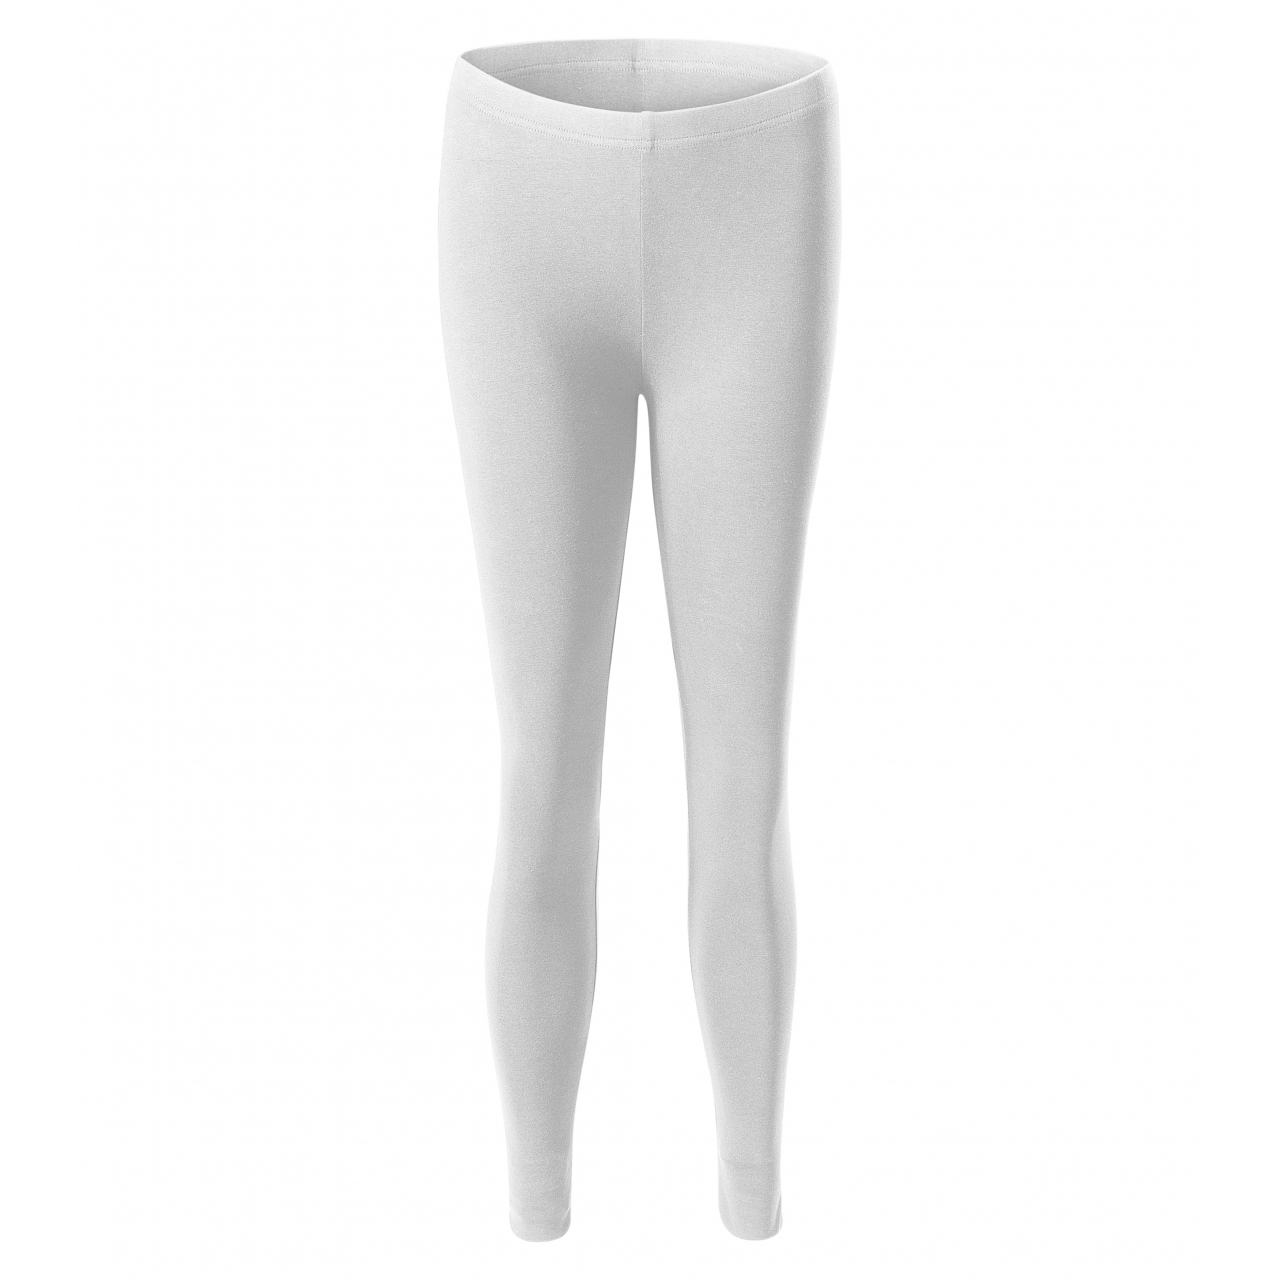 Legíny dámské Malfini Balance - bílé, XL